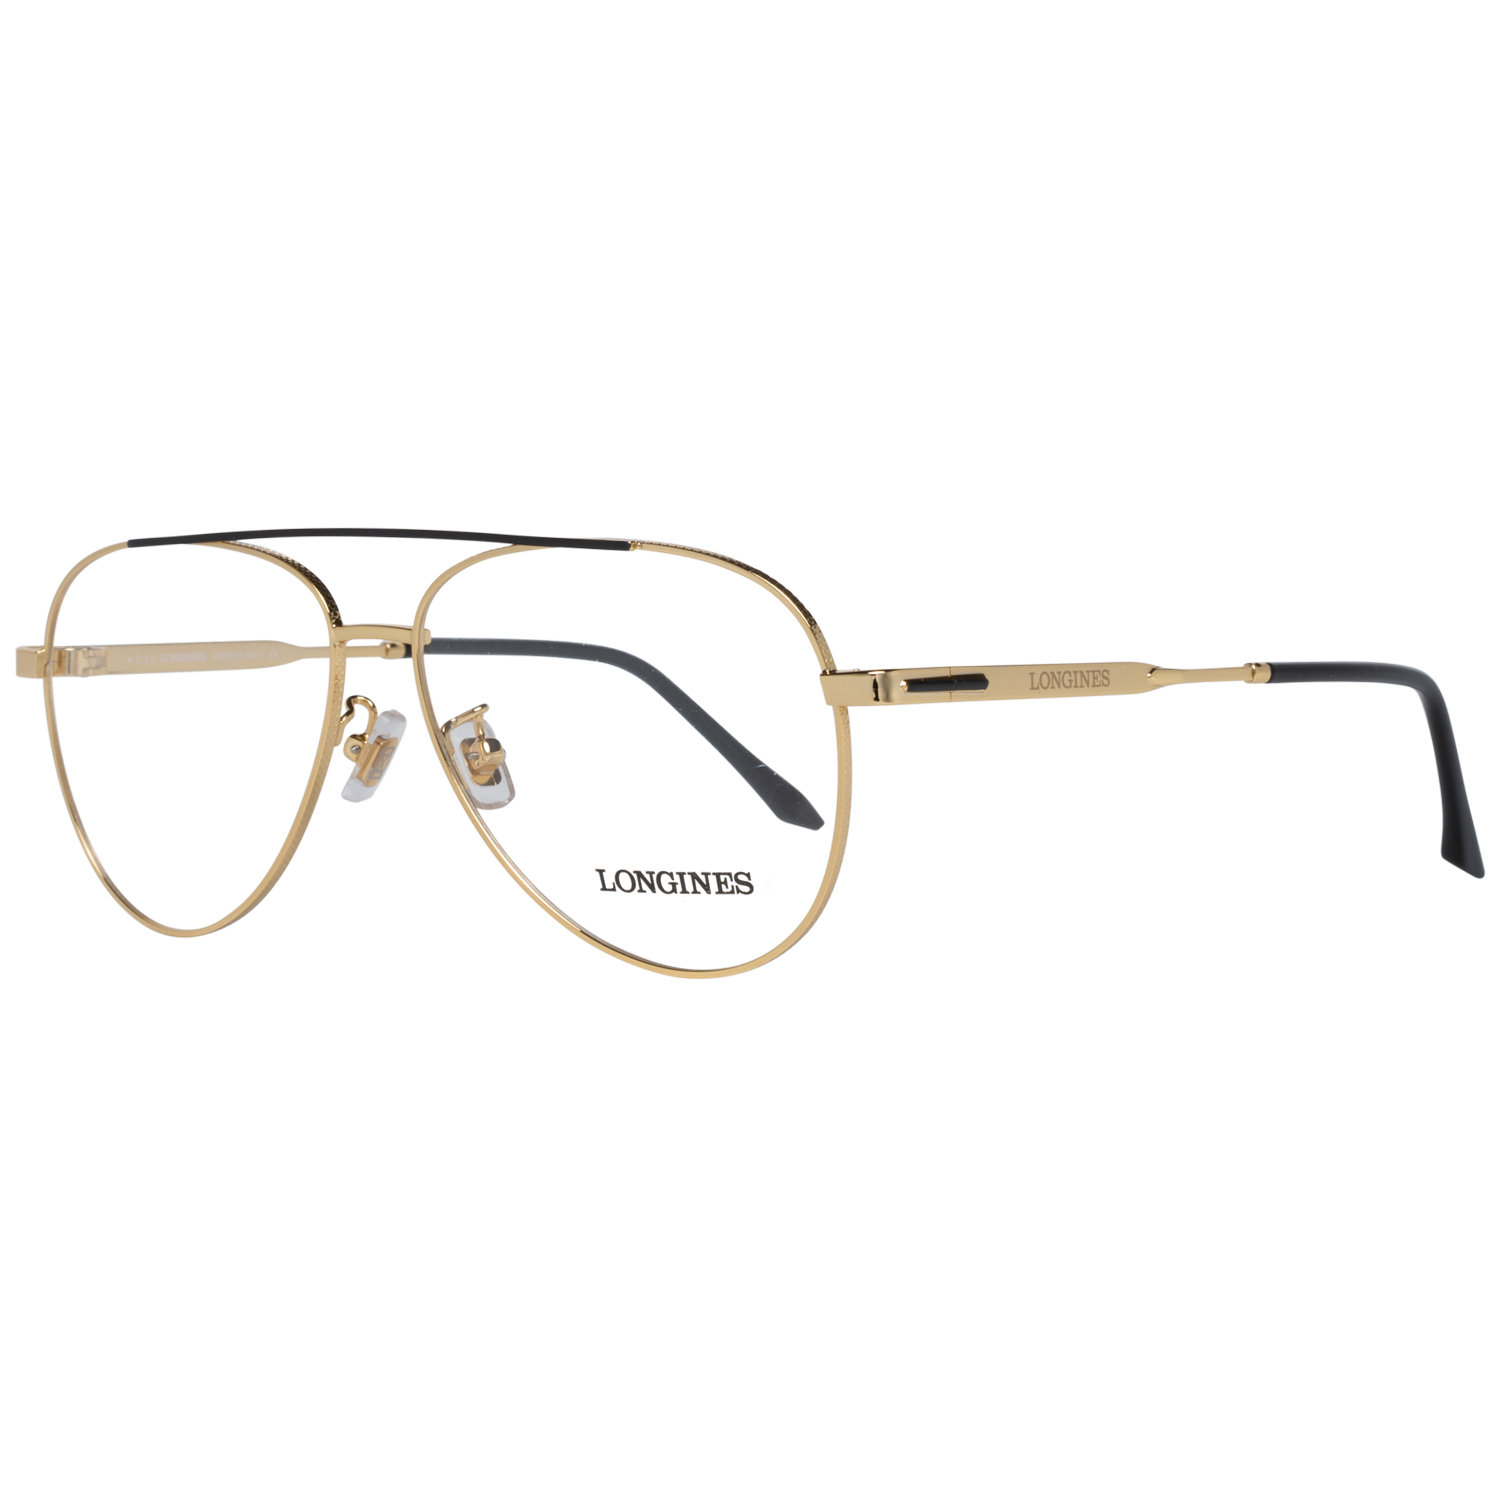 Longines Frames Longines Optical Frame LG5003-H 030 56 Eyeglasses Eyewear UK USA Australia 